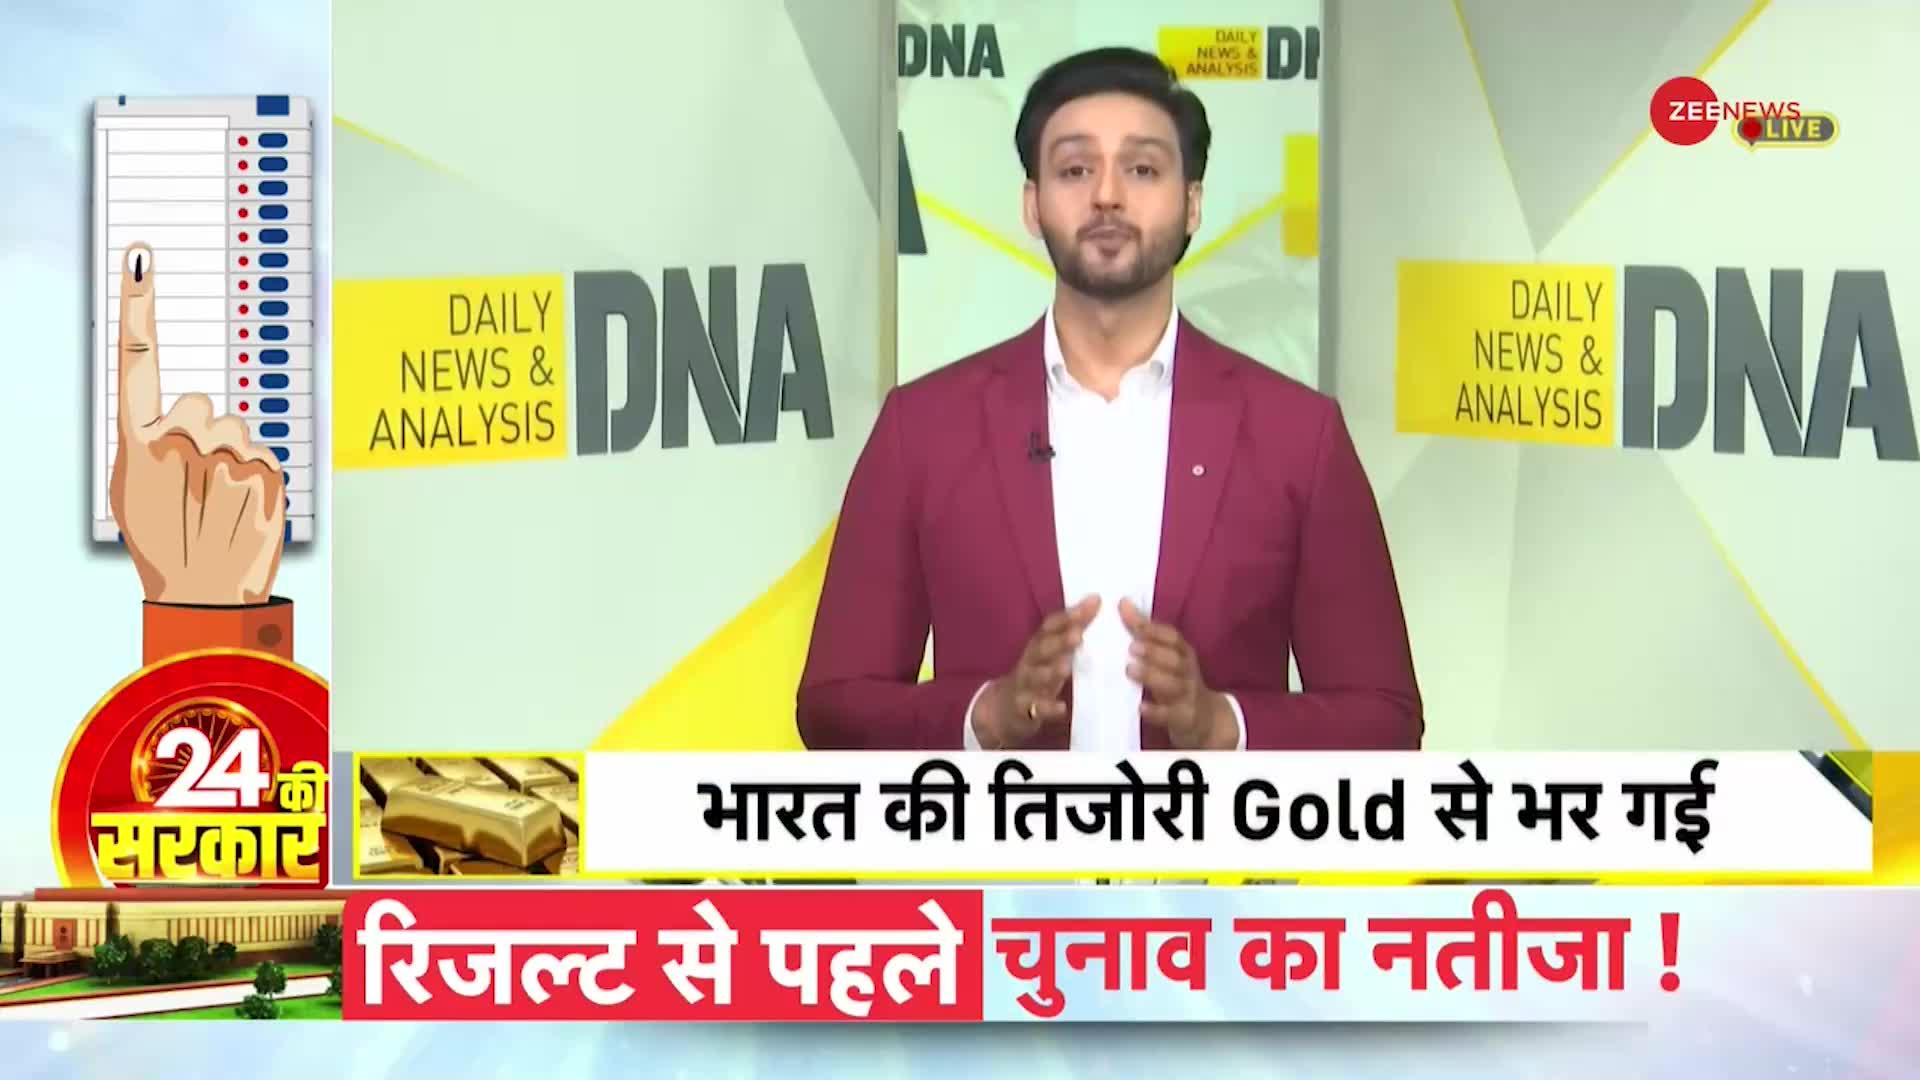 DNA: कहां रखा है भारत का 100 टन सोना?